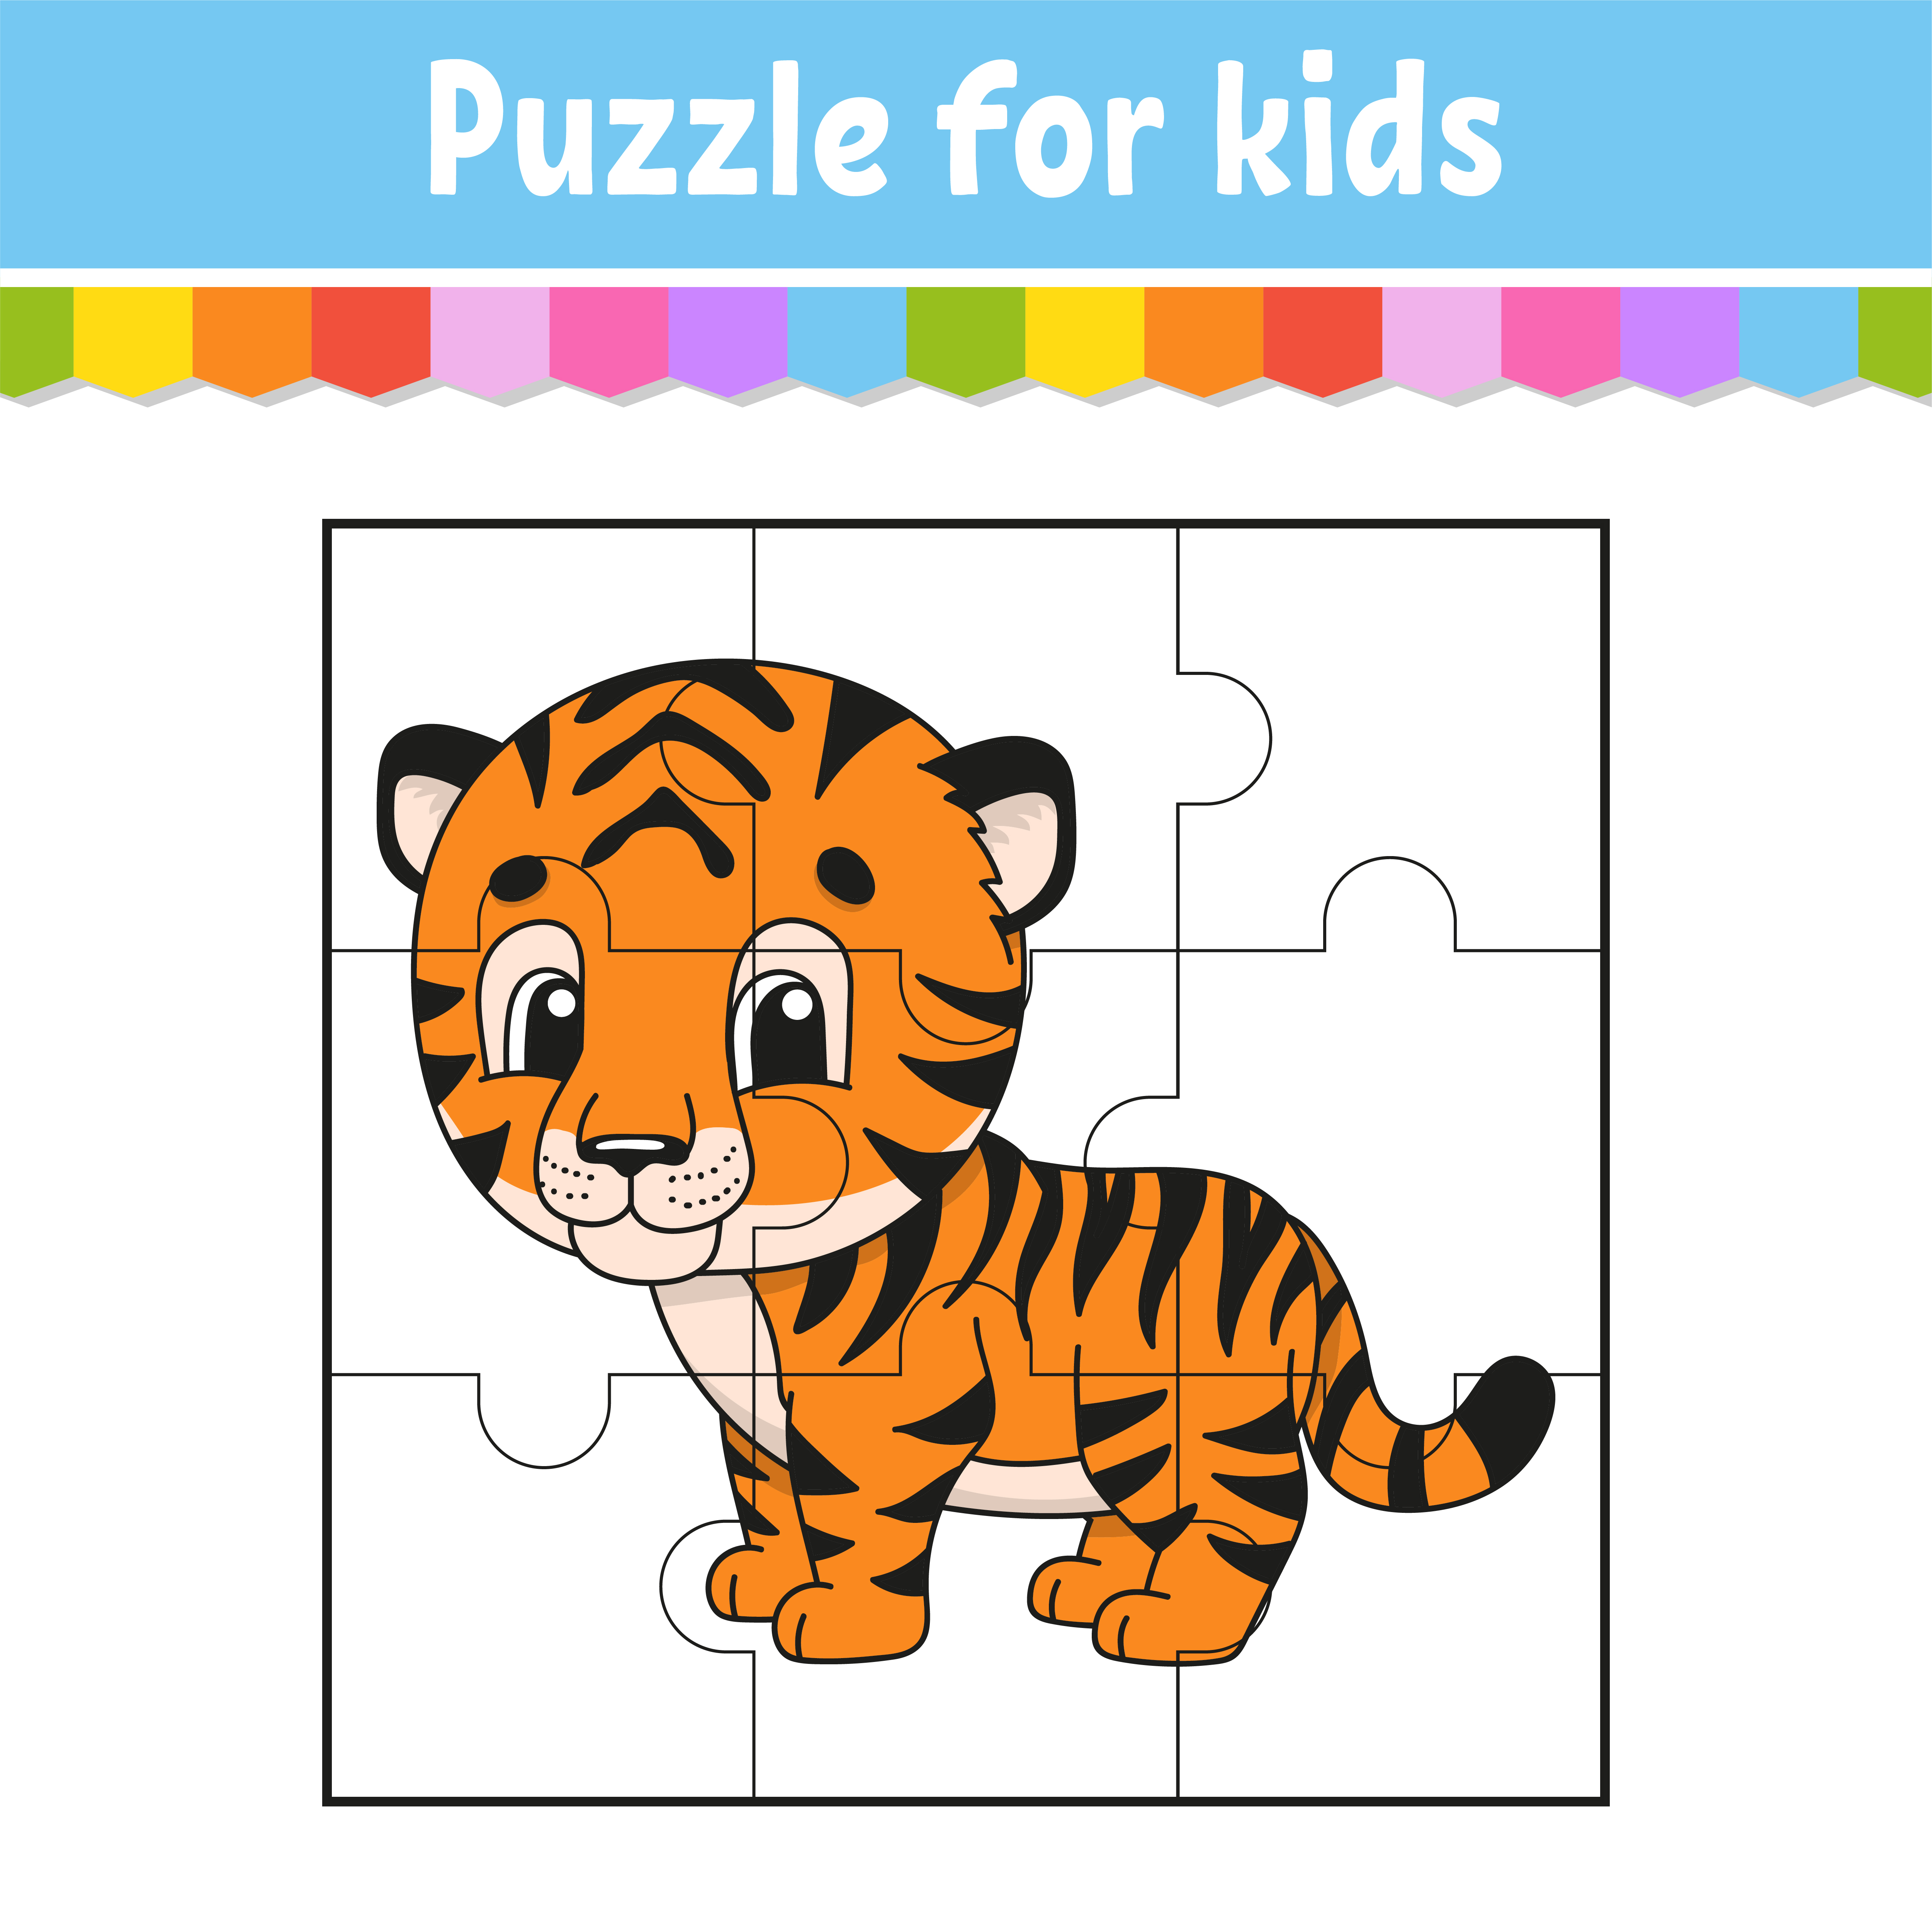 Encontre o jogo de diferença para crianças com um tigre fofo uma atividade  educacional com um tigre engraçado